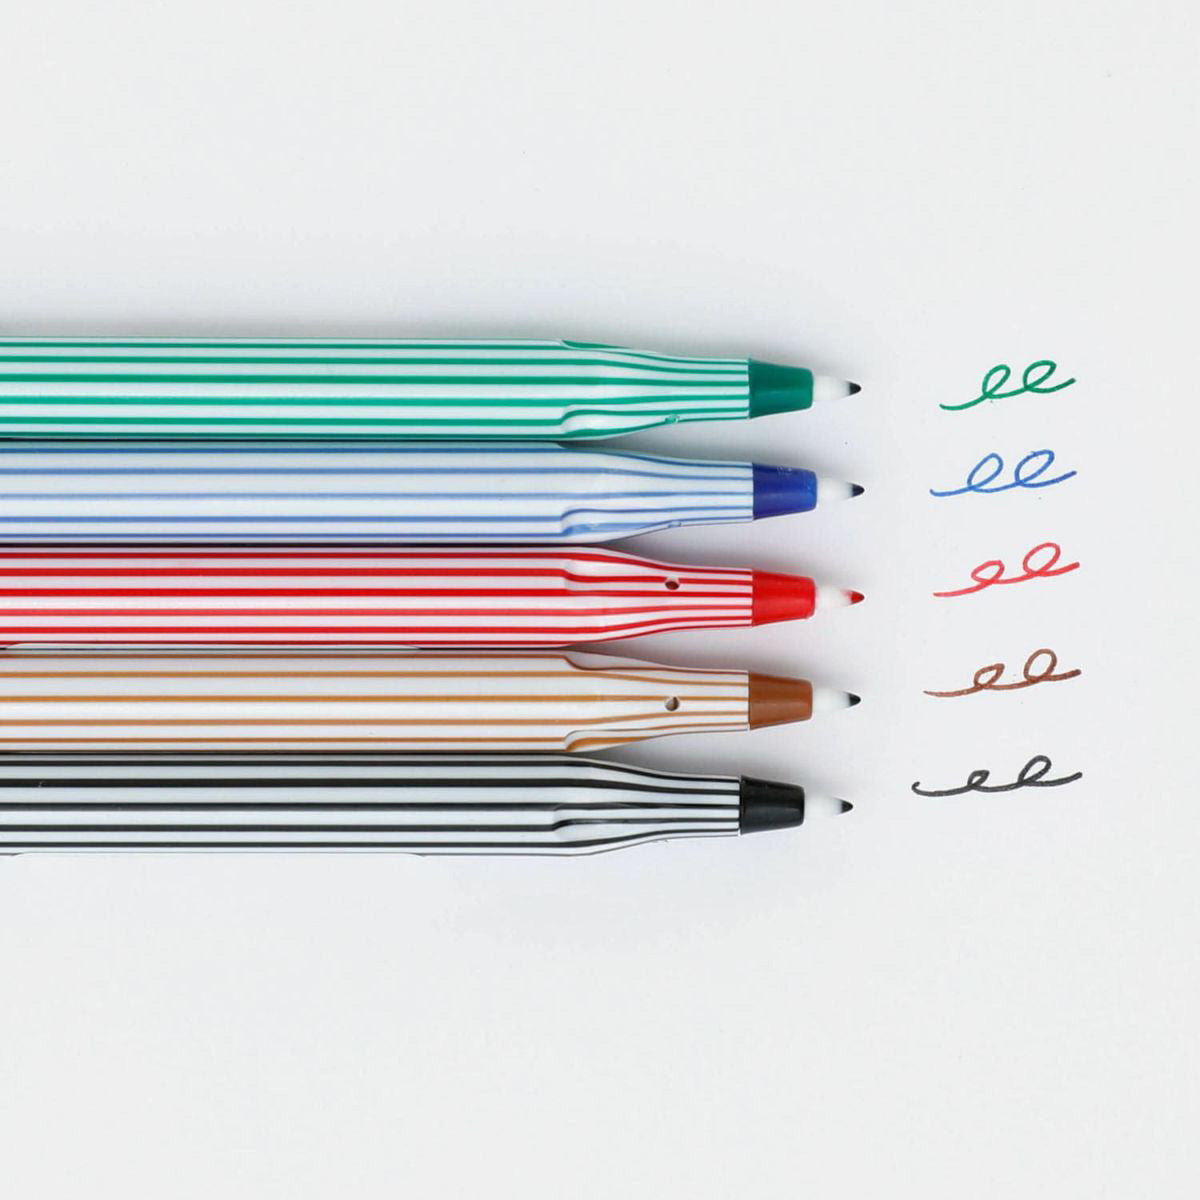 Hightide Good Children's Color Pen (5-pakk)